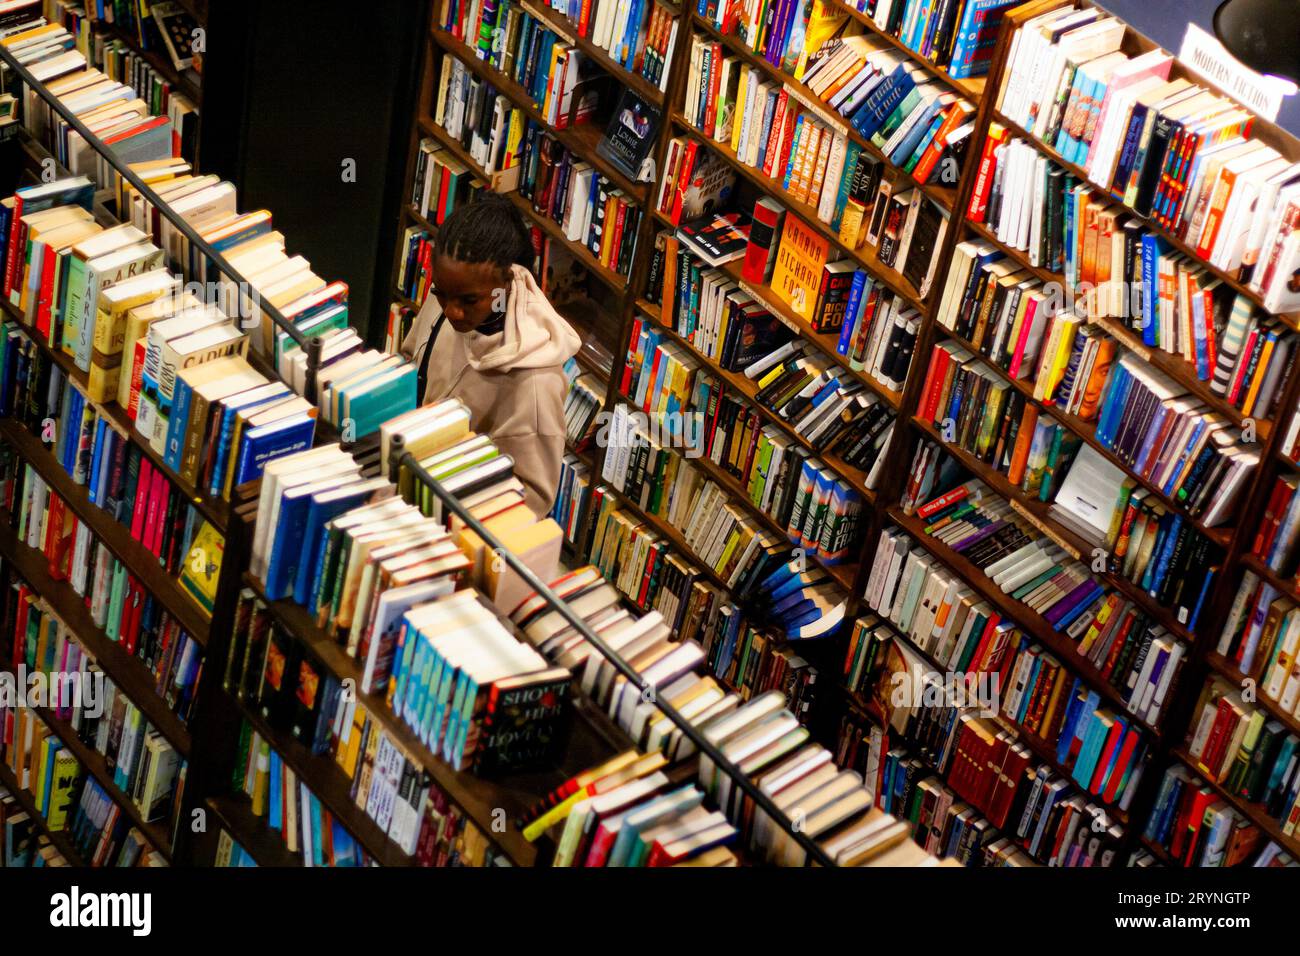 Eine junge Frau, die in einem Buchladen Bücher durchsucht Stockfoto